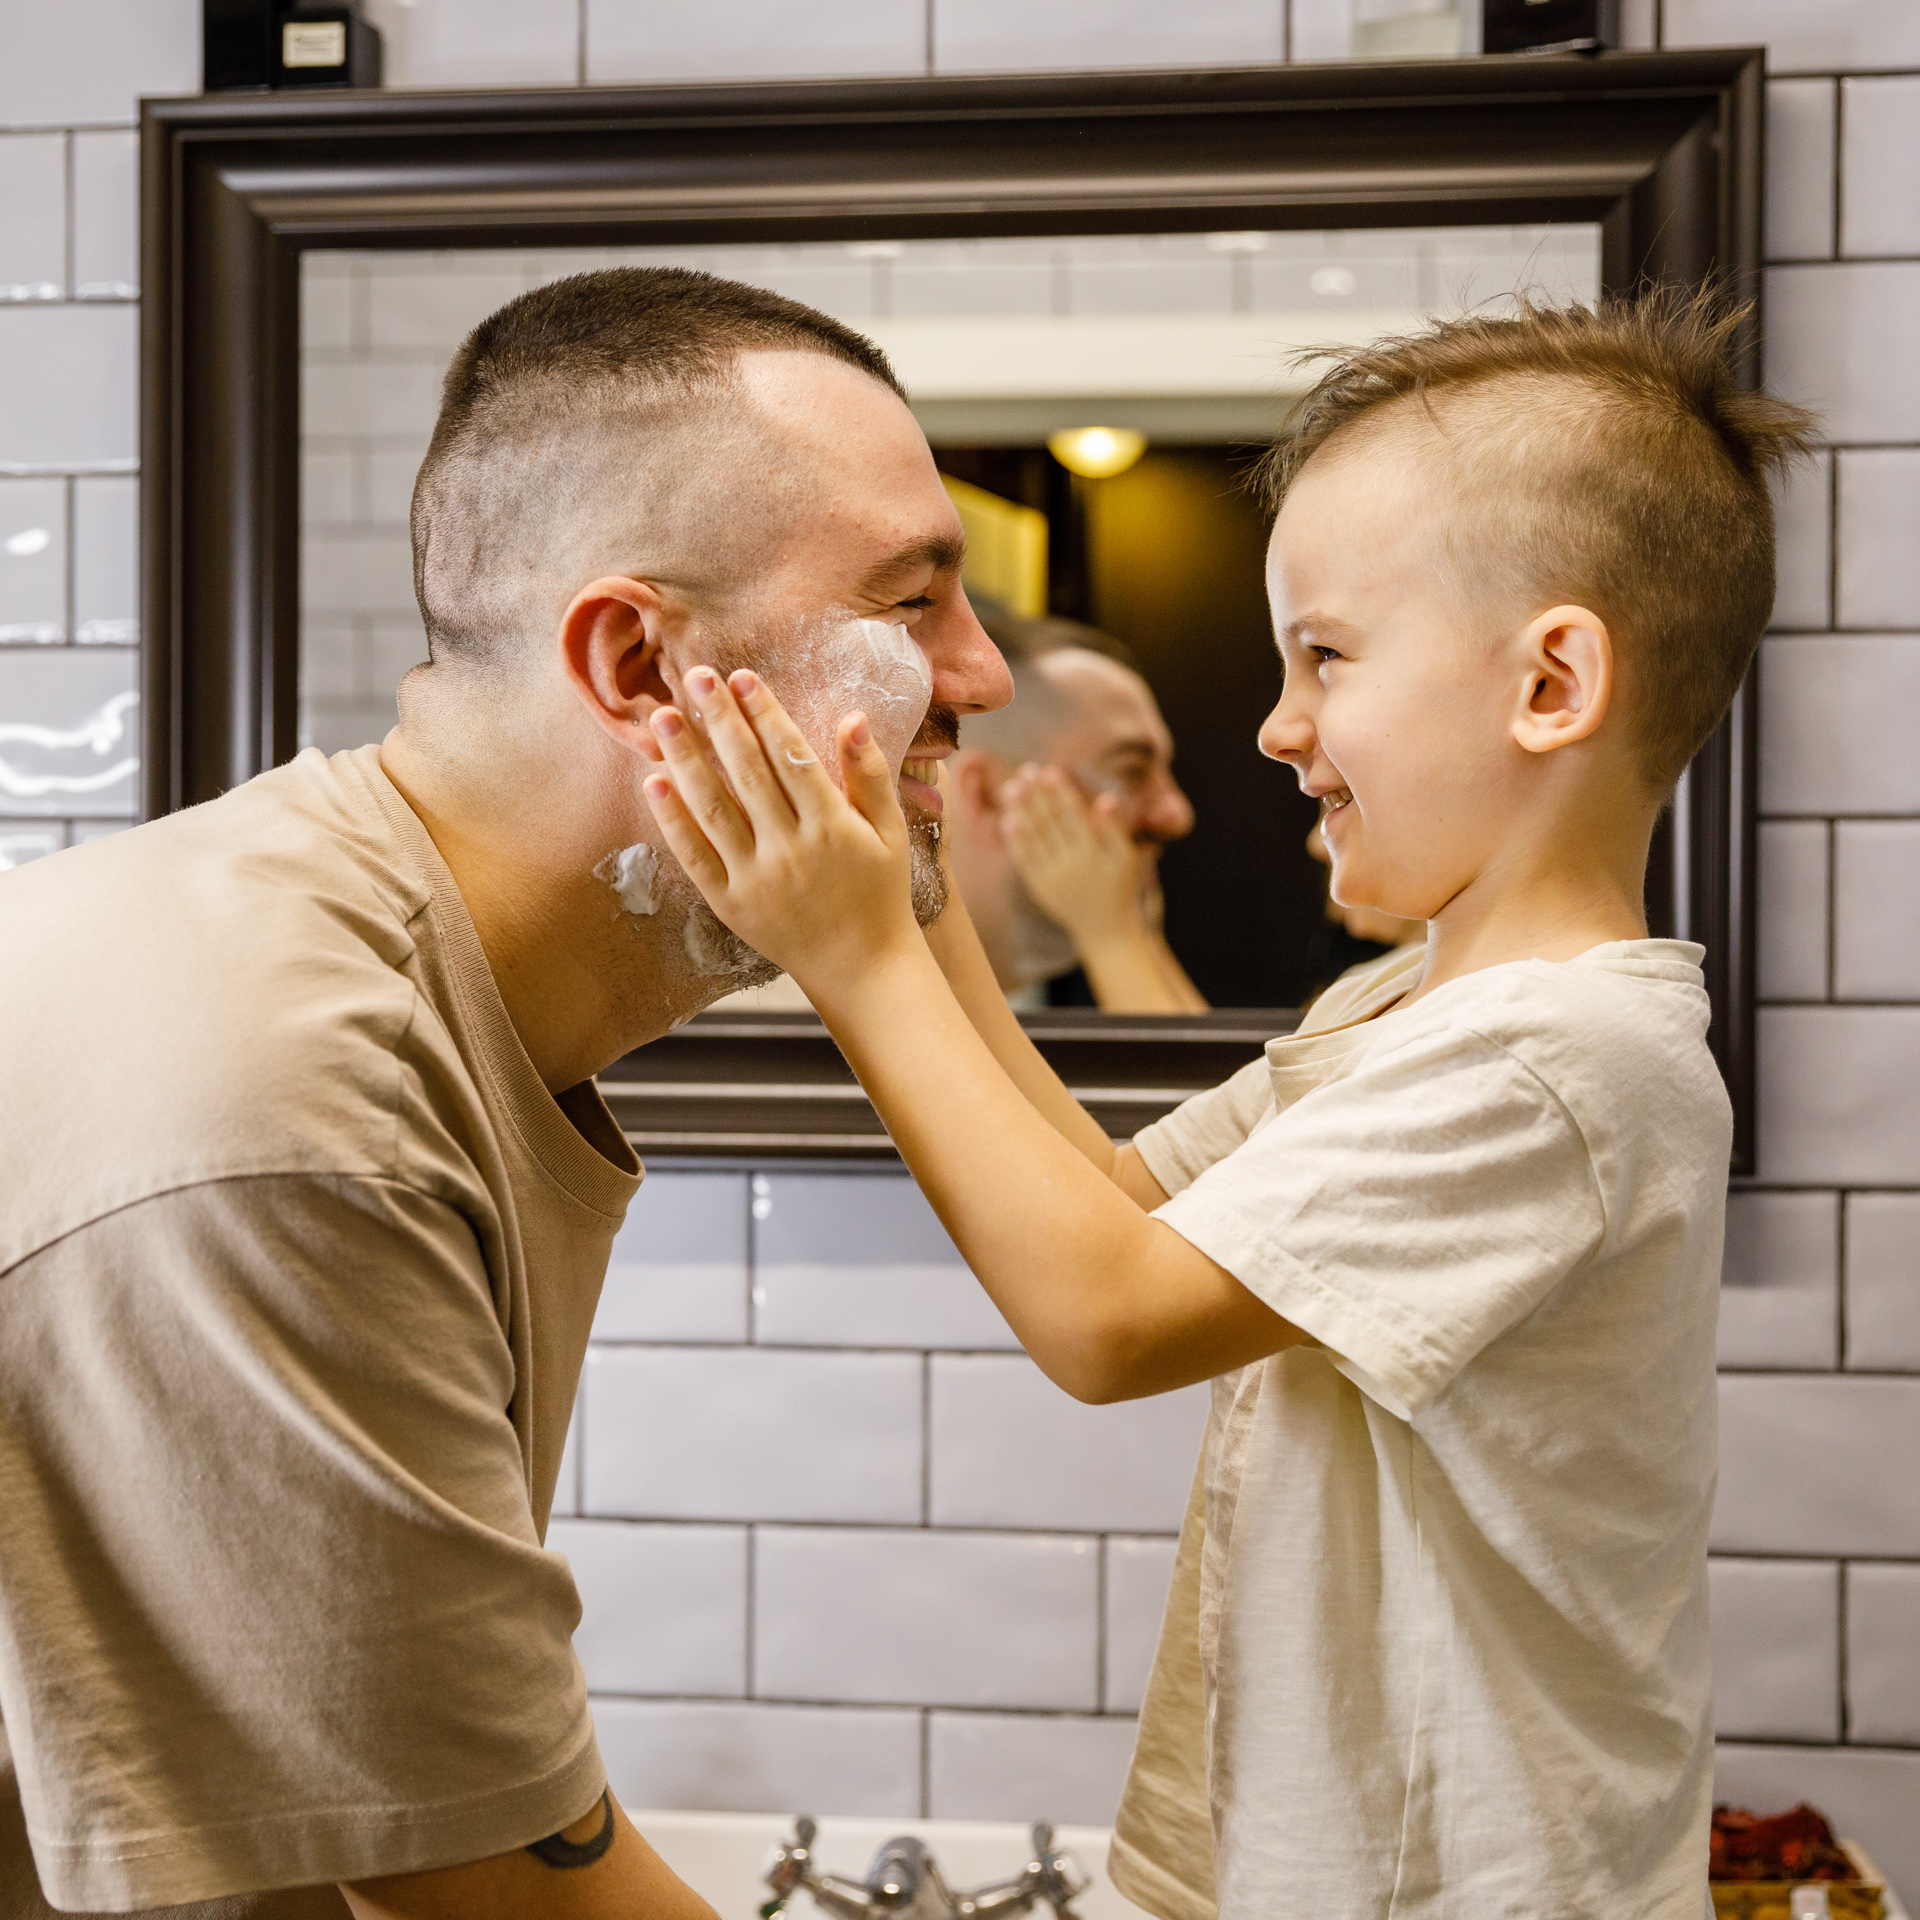 Tėtis su penkiamečiu vonioje, sūnus tepa tėčio veidą skutimosi putomis